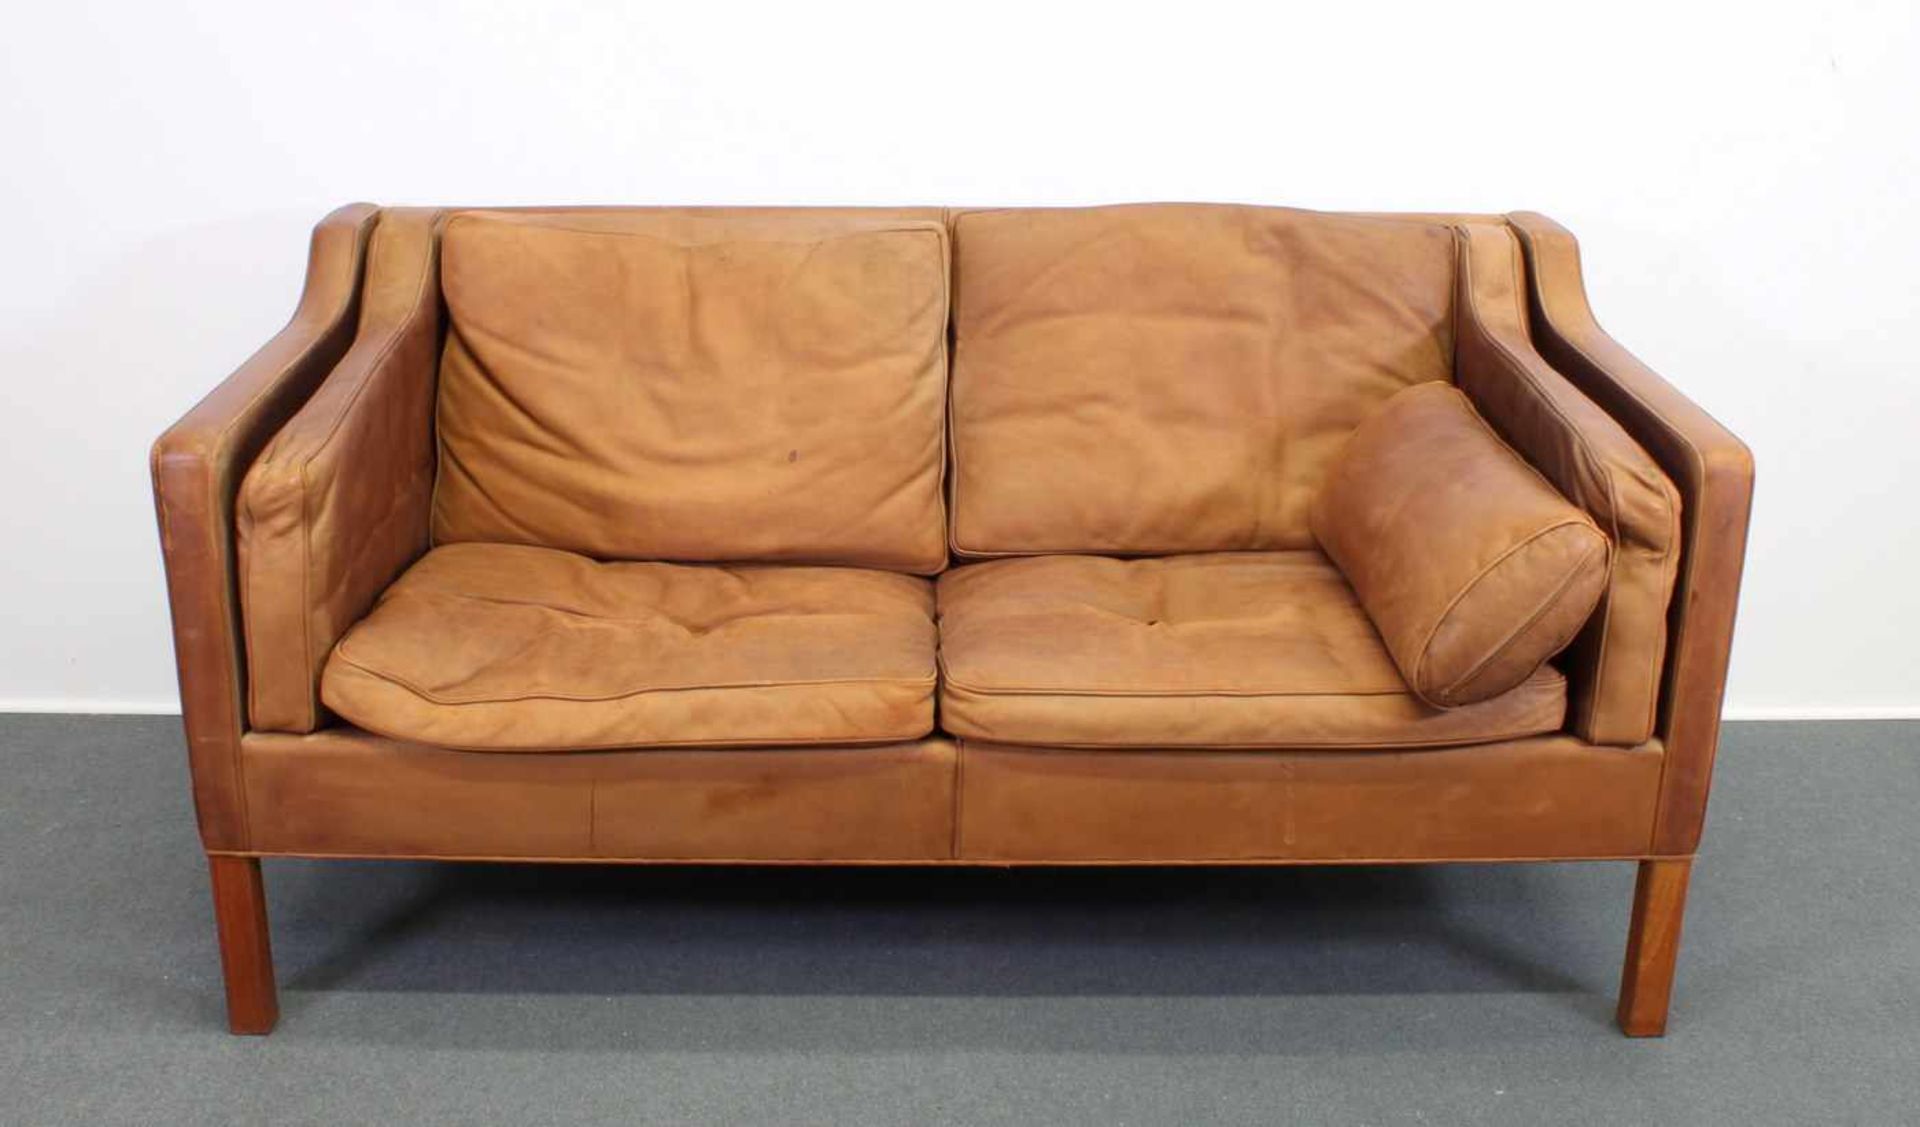 Zweisitzer-Sofa, Design Børge Mogensen (1914-1972), Dänemark, 2. Hälfte 20. Jh., Herstellung - Image 2 of 8